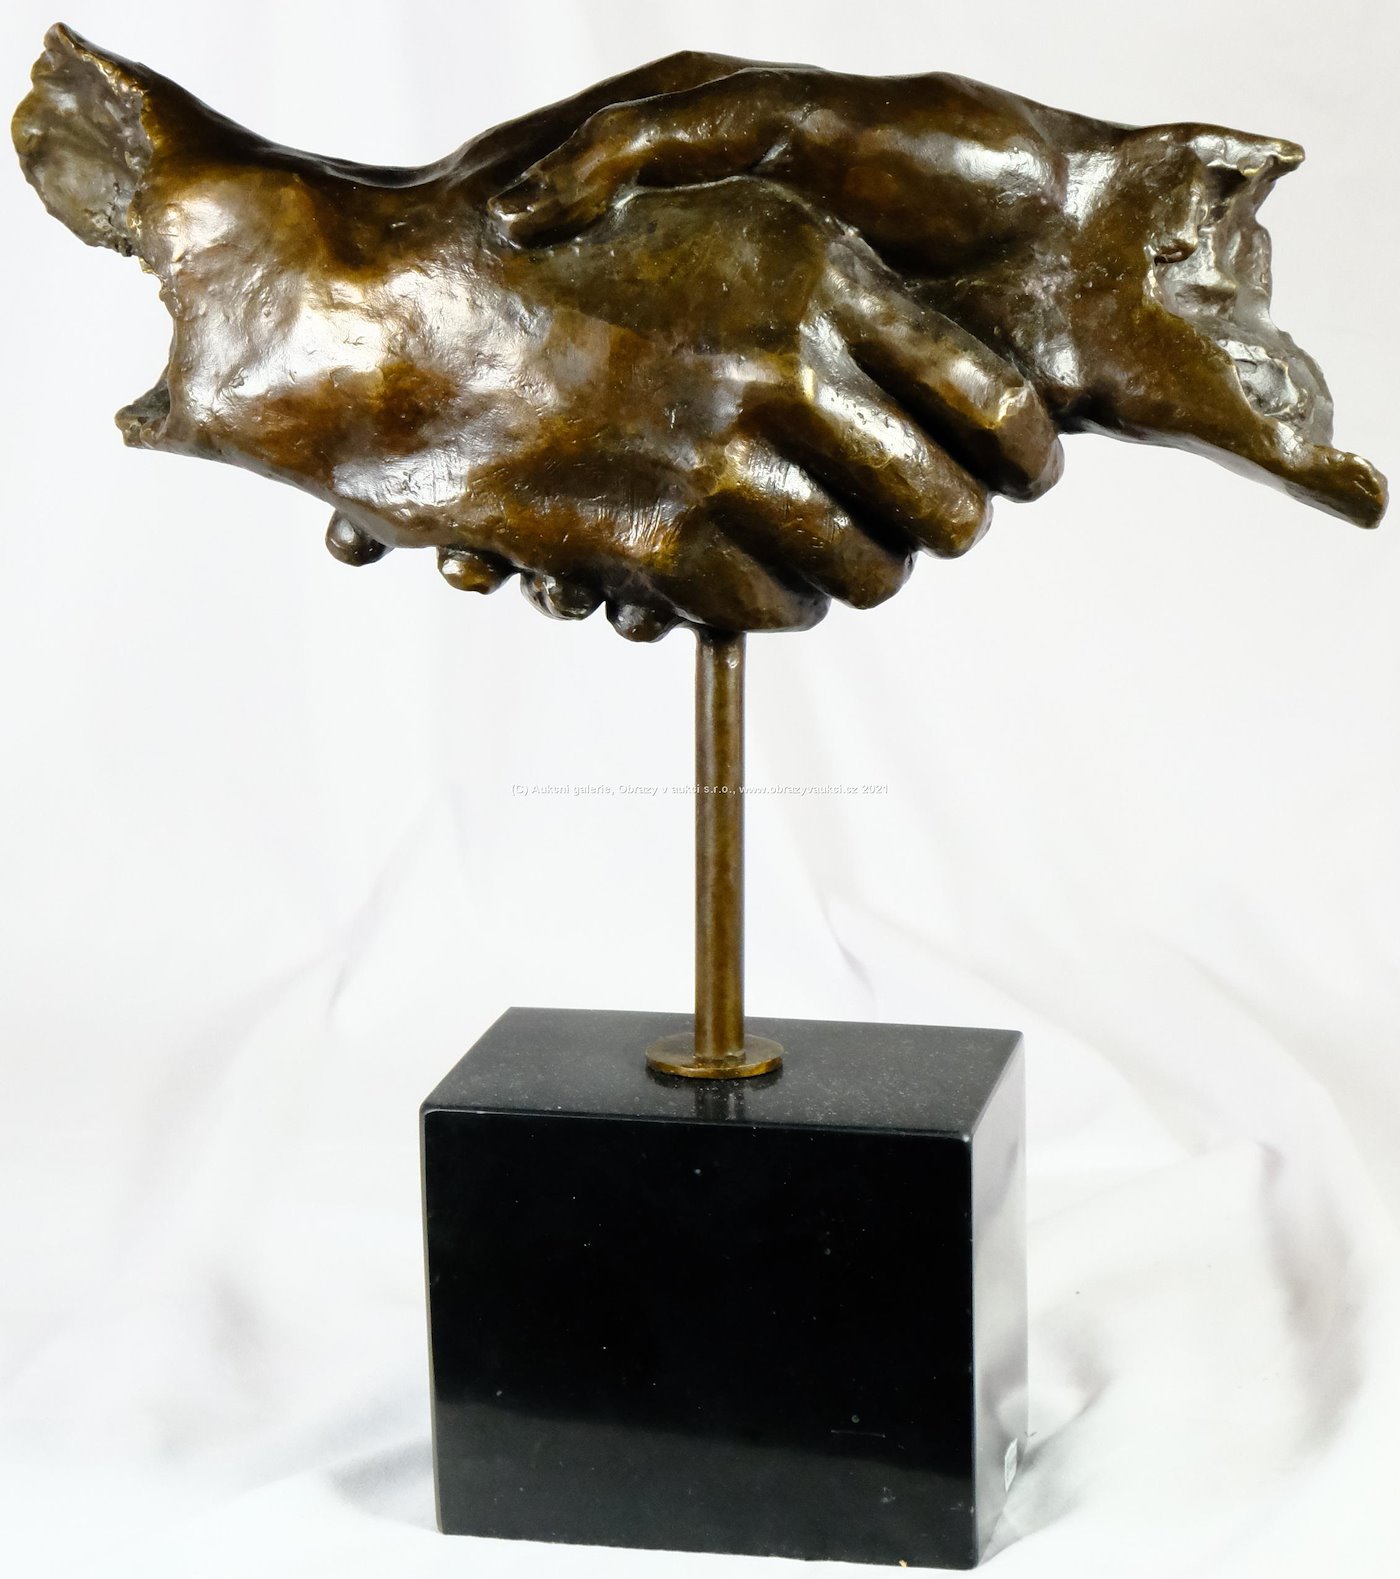 Salvador Dalí - Shaking hand